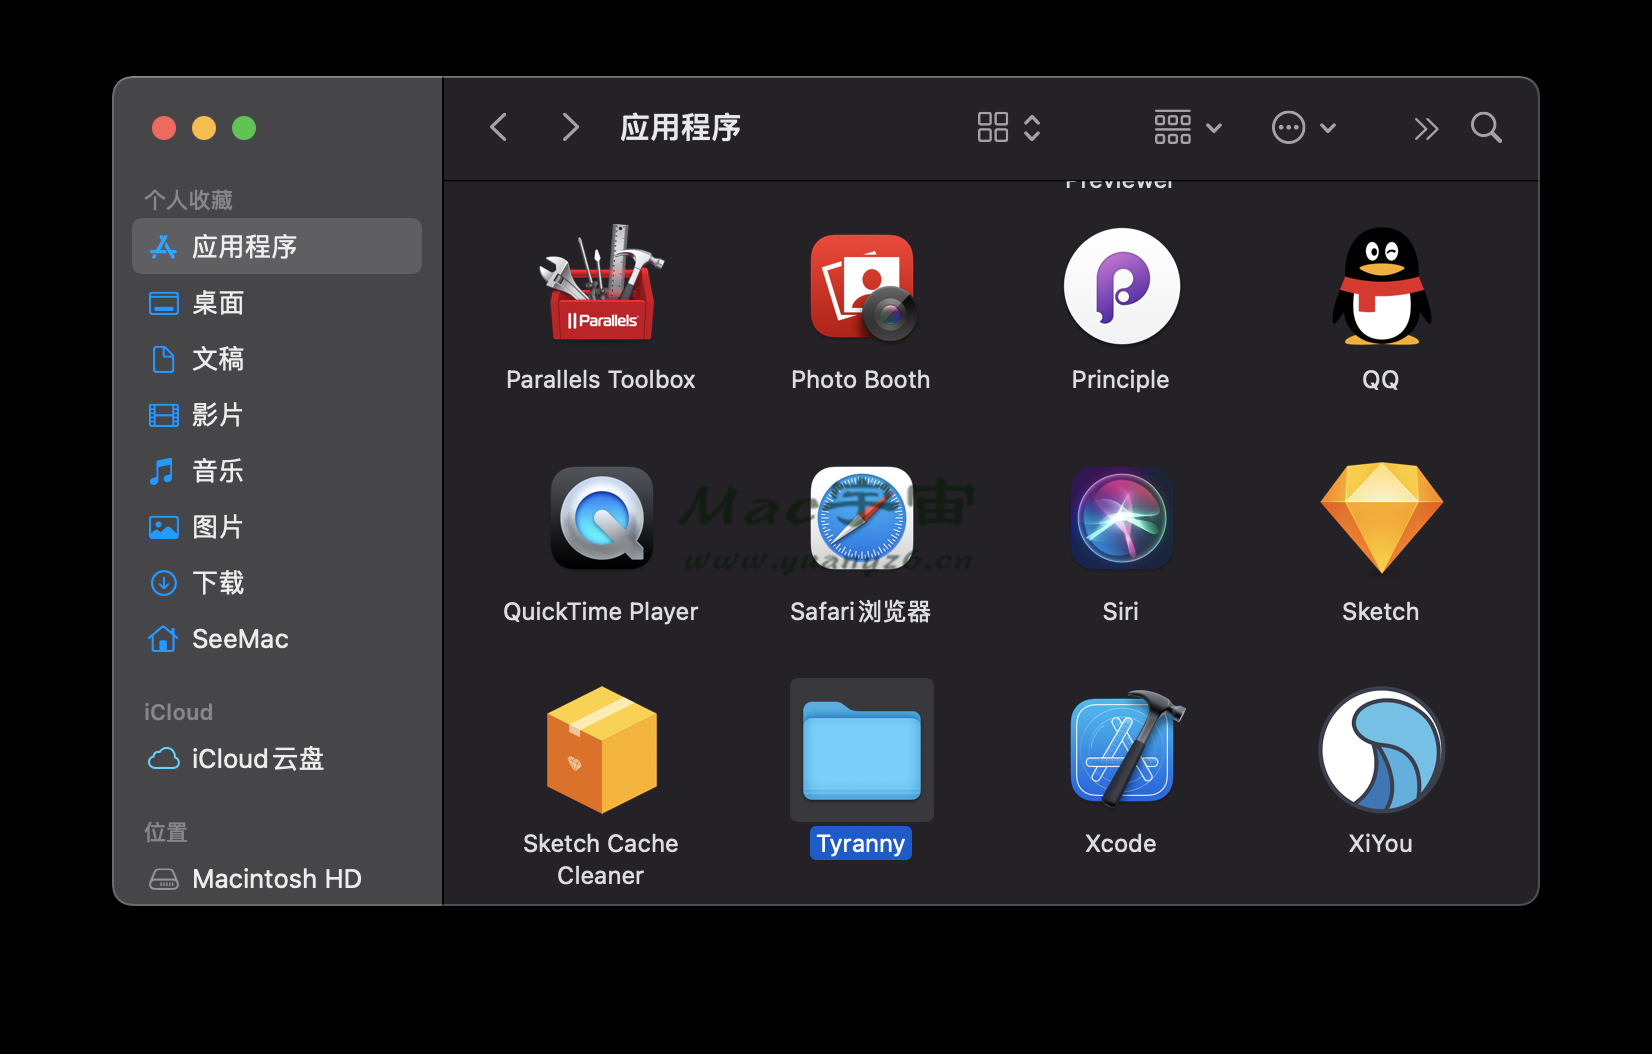 暴君 for Mac v1.2.1.160 中文设置教程